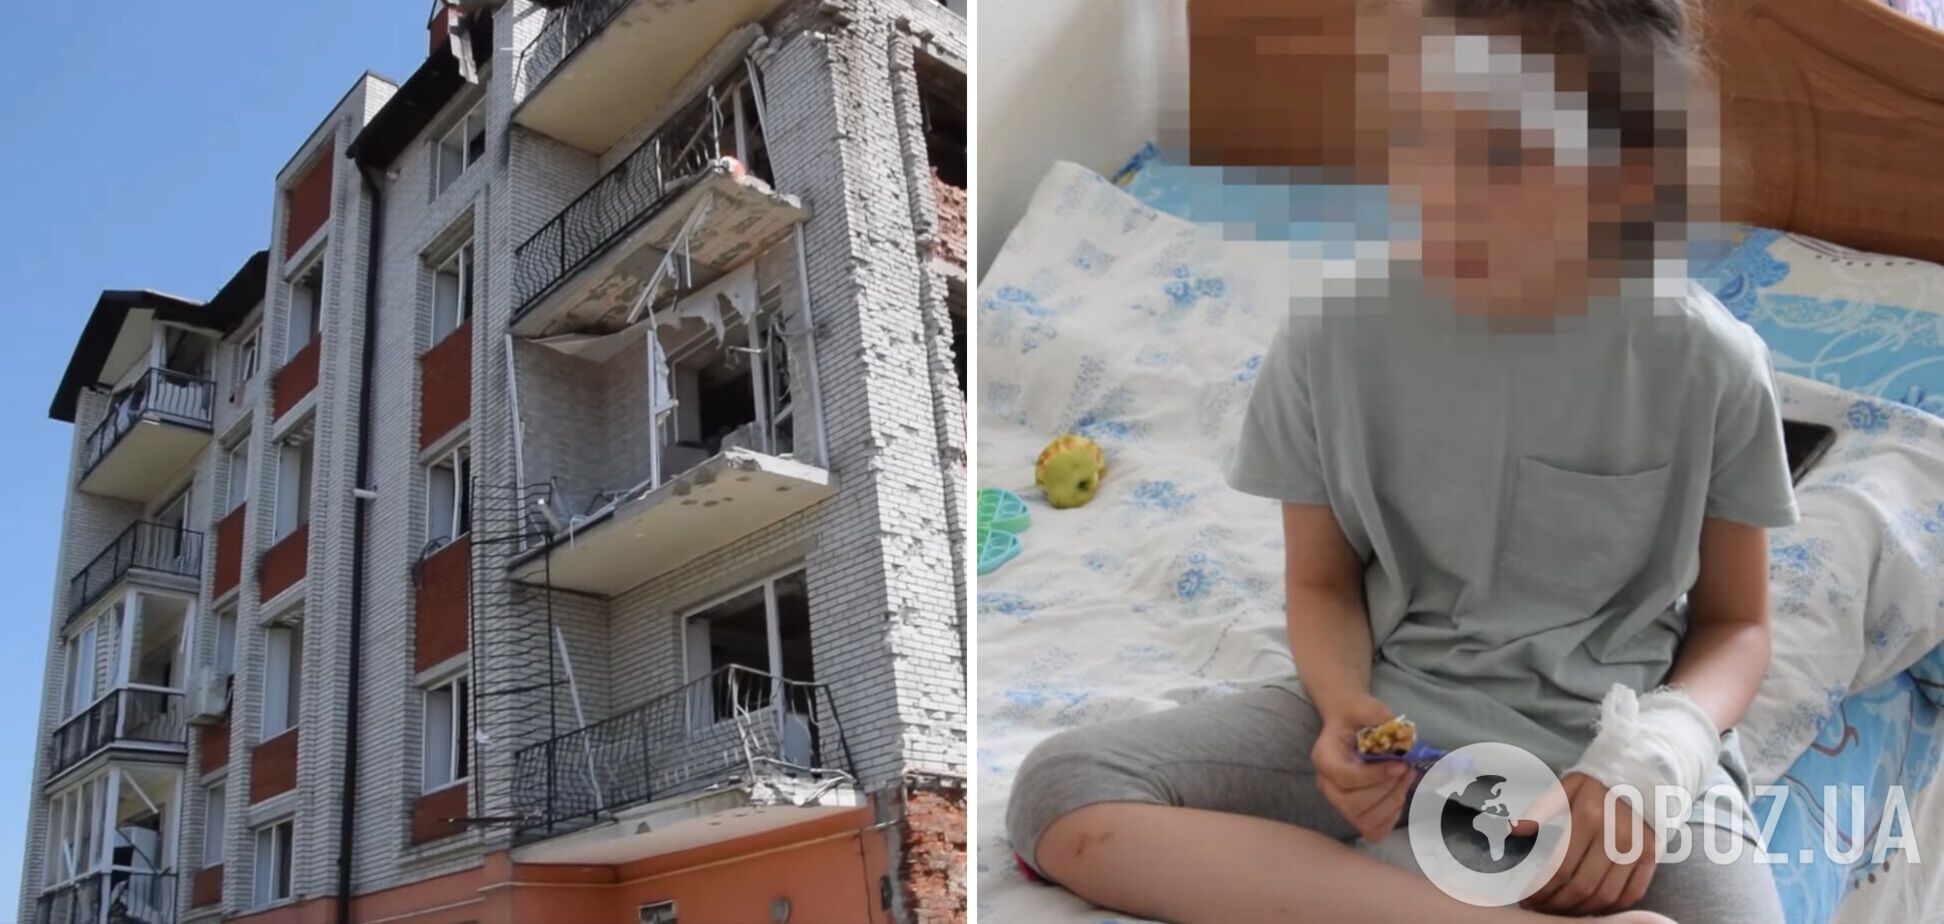 Сім'я, що втекла від війни з Харківщини, потрапила під обстріл на Тернопільщині: поранено дитину. Відео